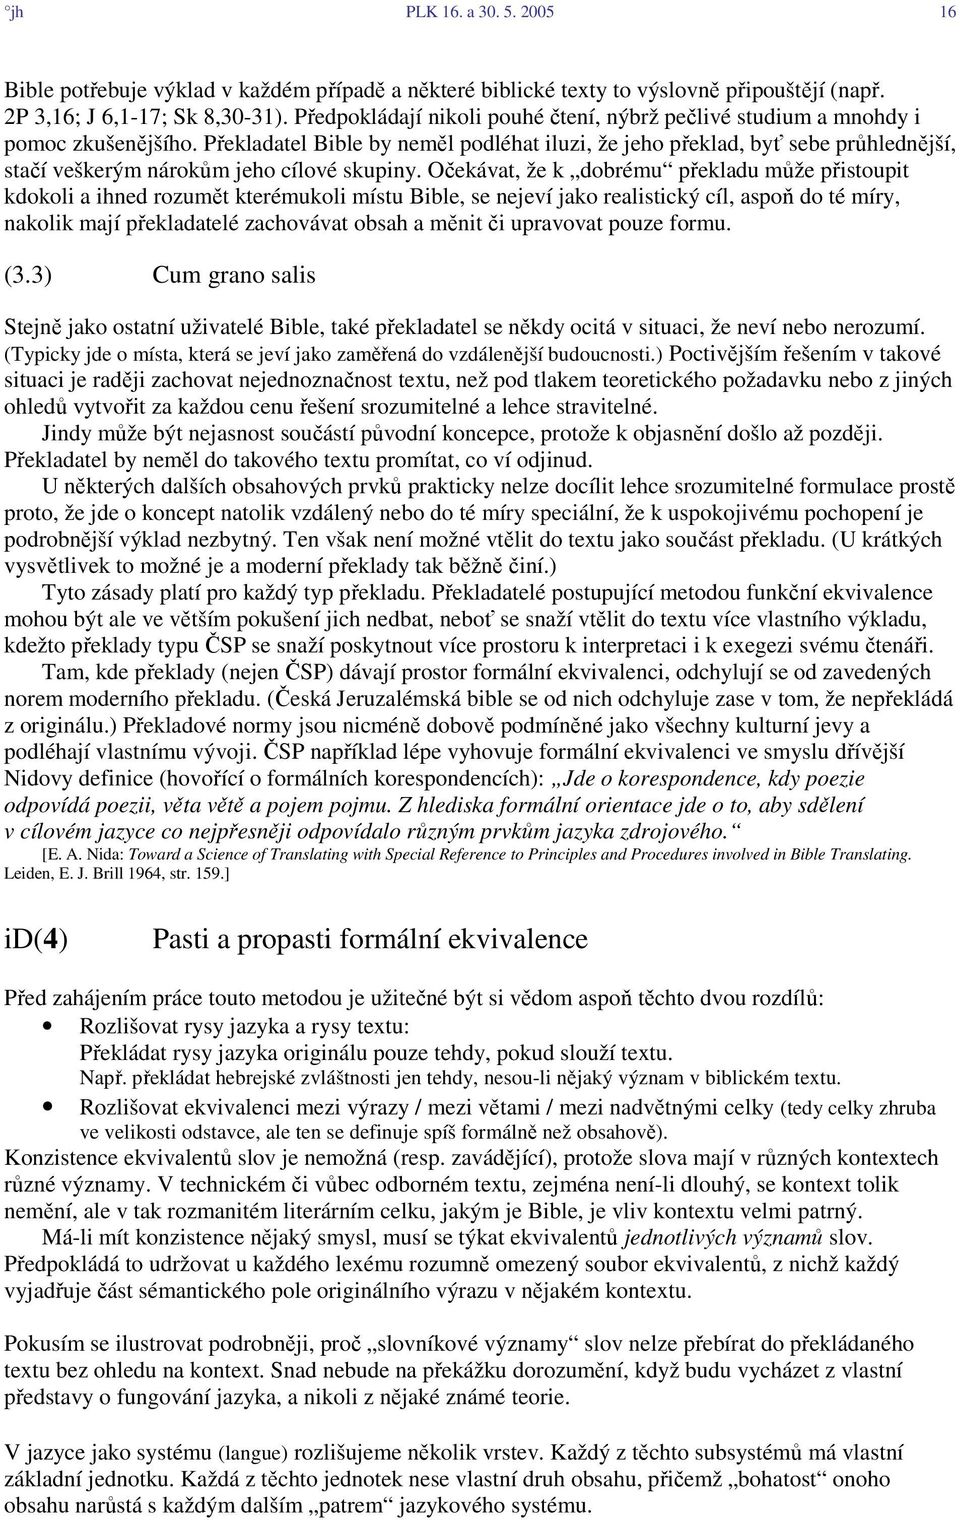 Několik soudobých překladů Bible do češtiny - PDF Stažení zdarma